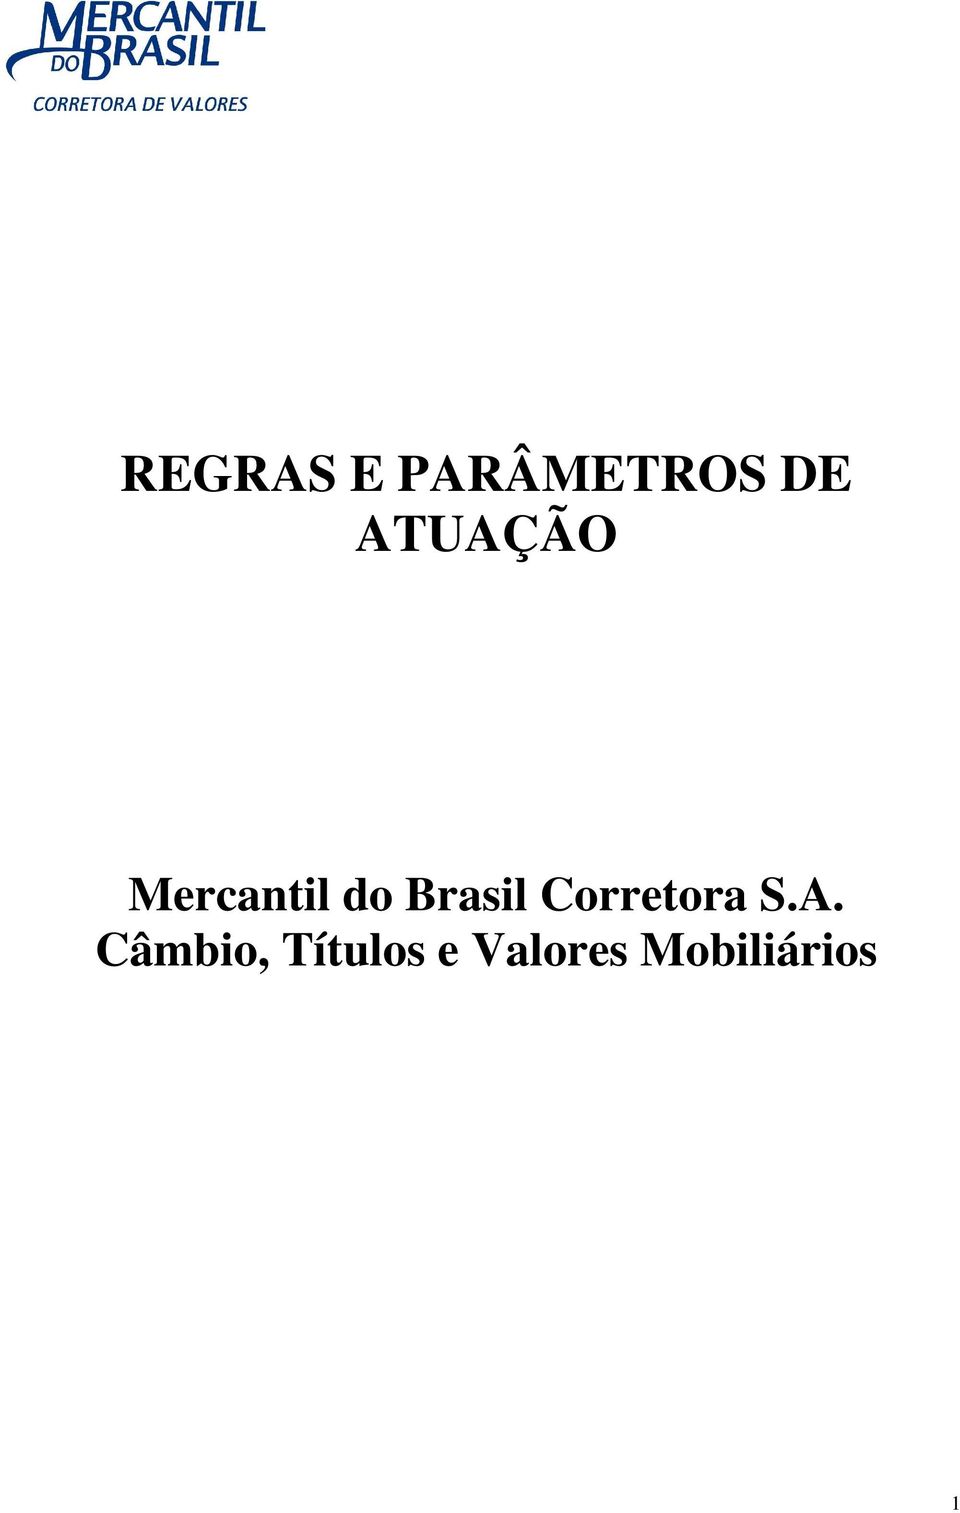 Brasil Corretora S.A.